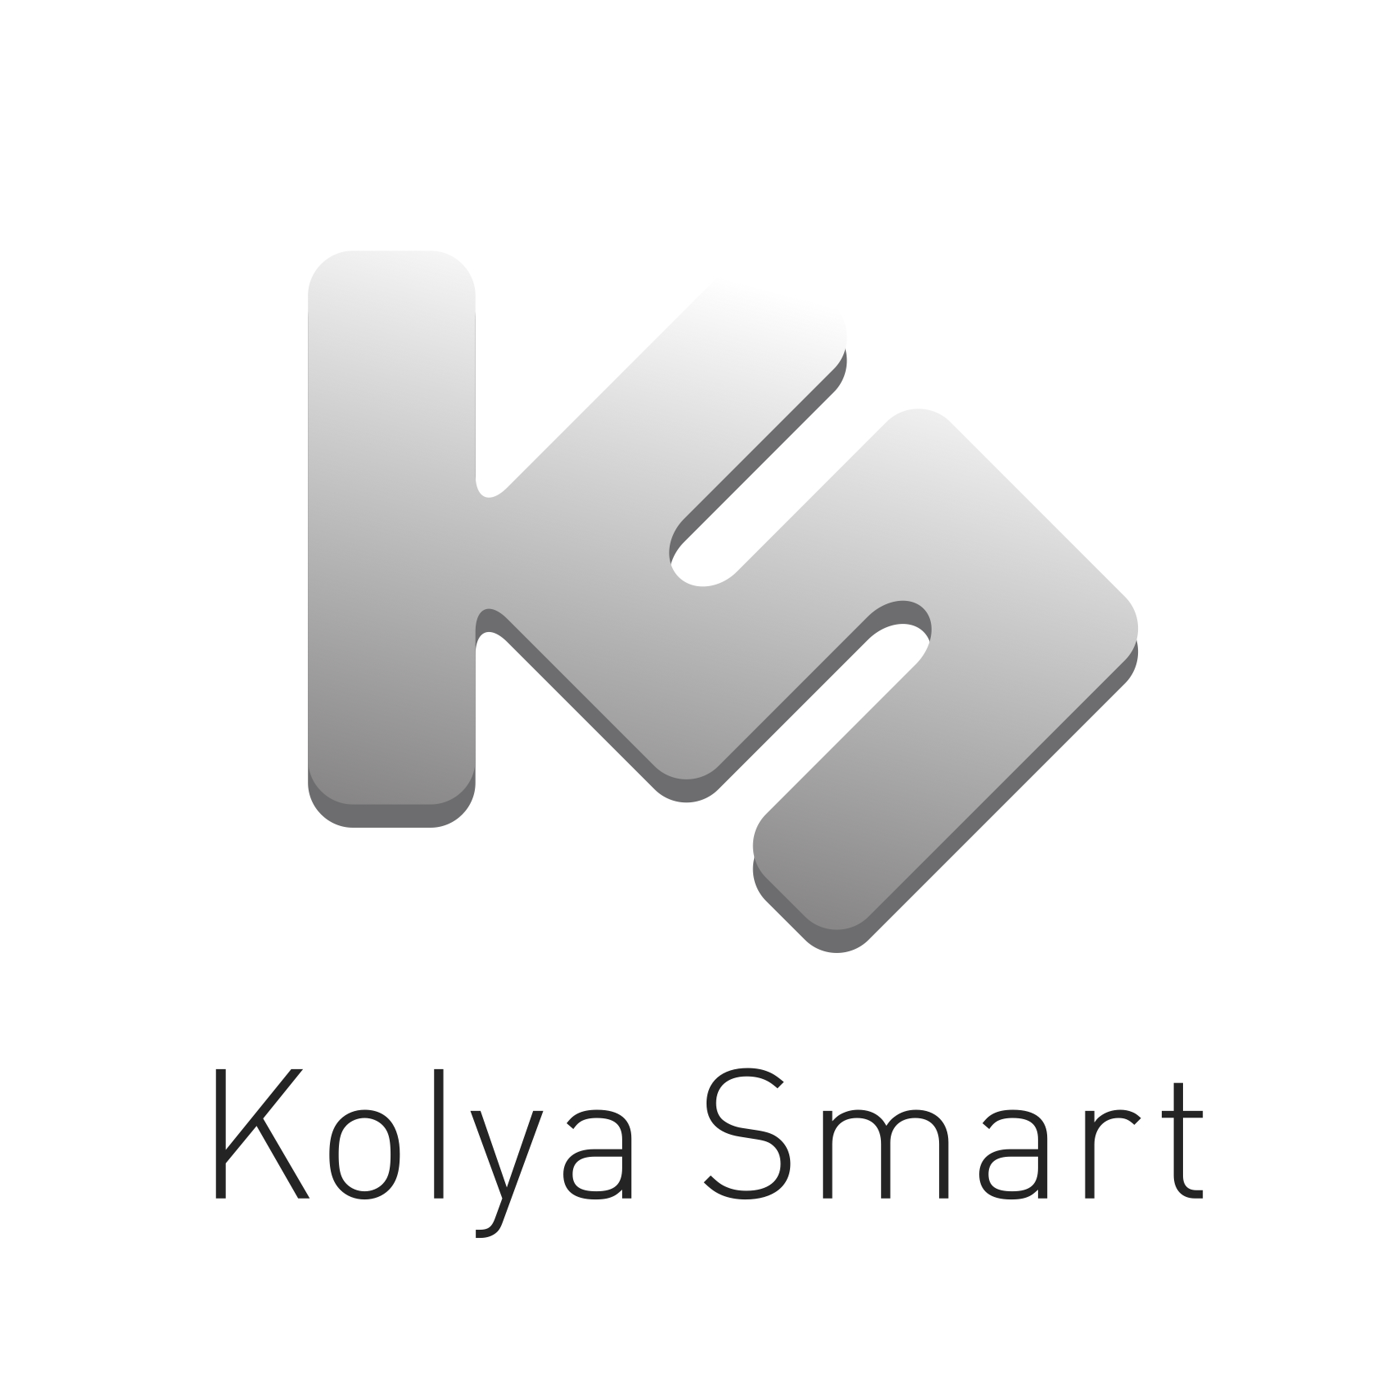 Kolya Smart (Raw Spirit)